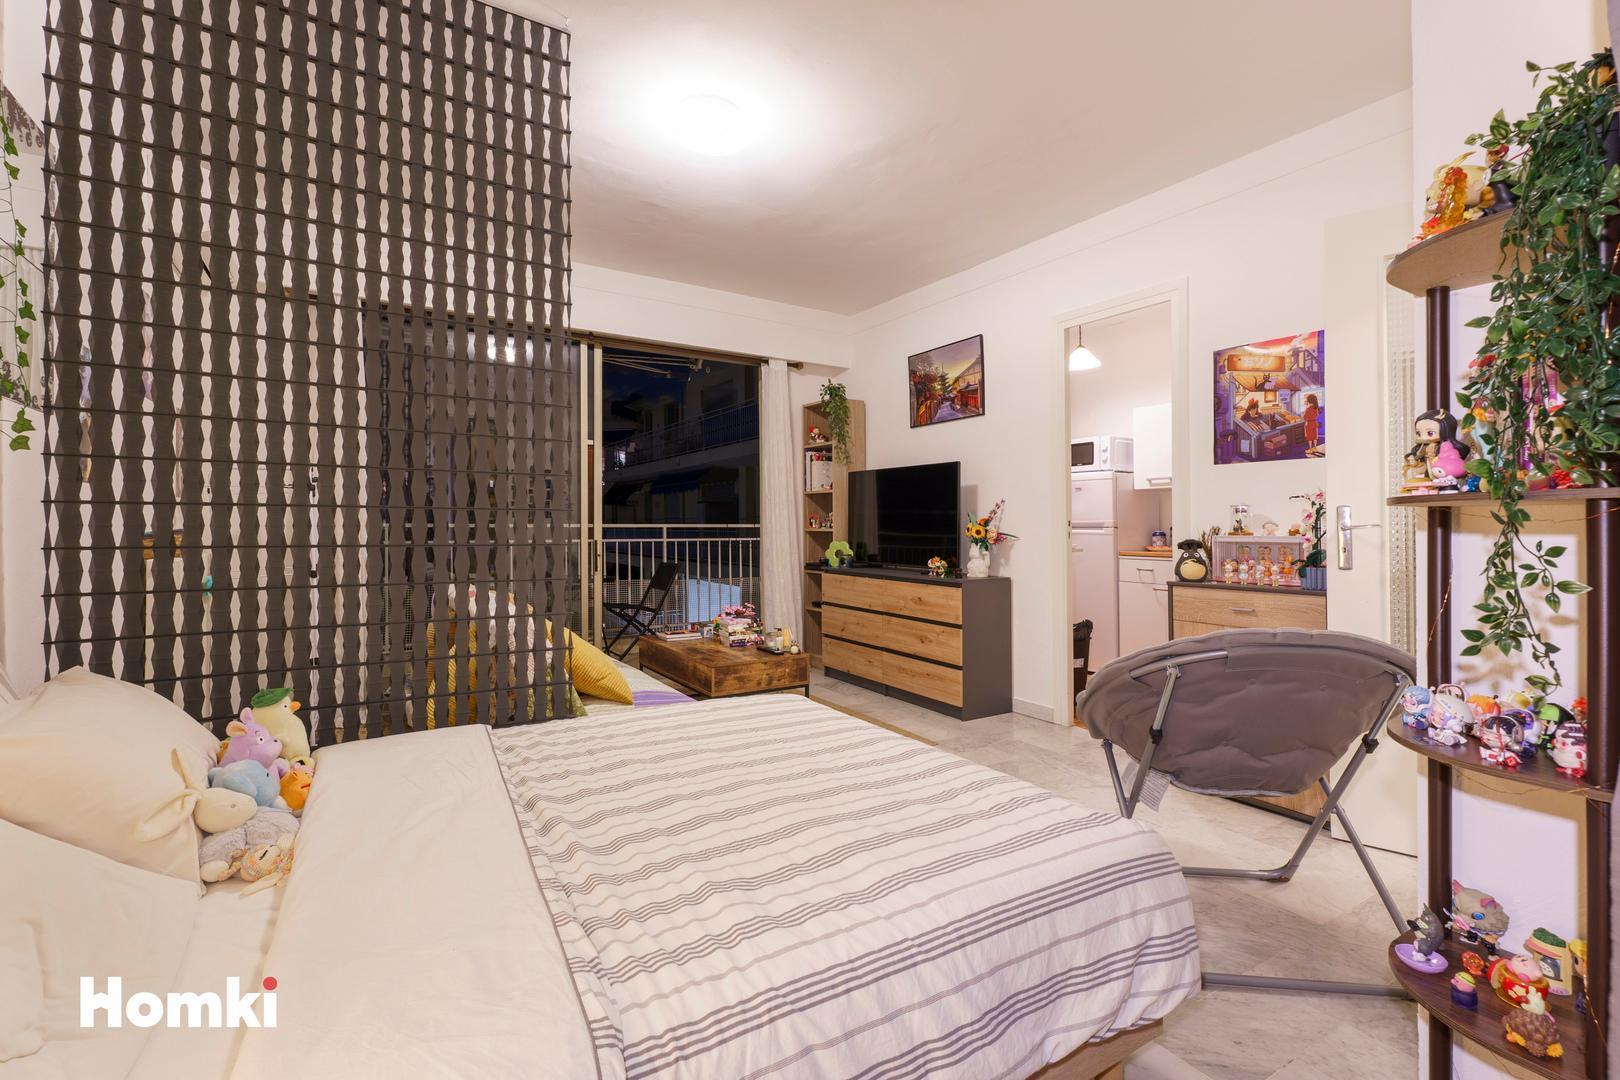 Homki - Vente Appartement  de 31.0 m² à Le Cannet 06110